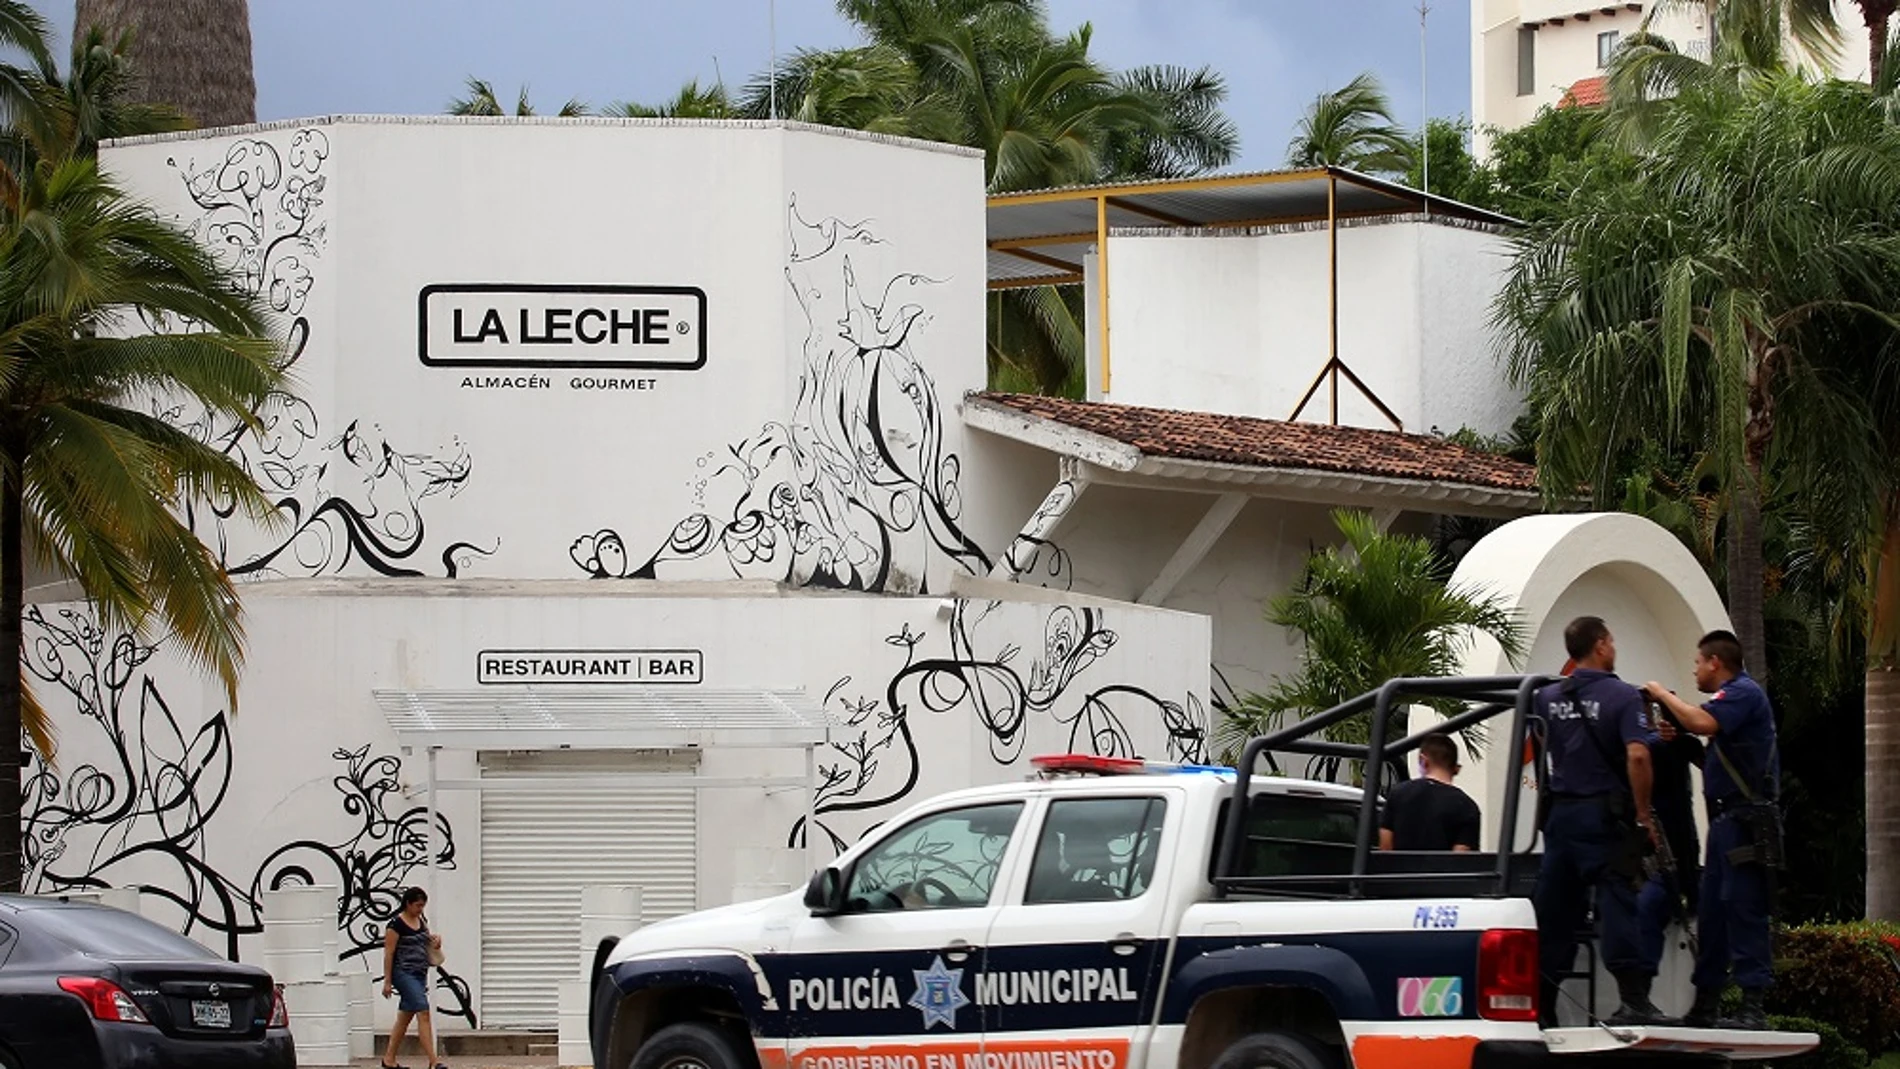 Fotografía del restaurante La Leche vigilado por la policía